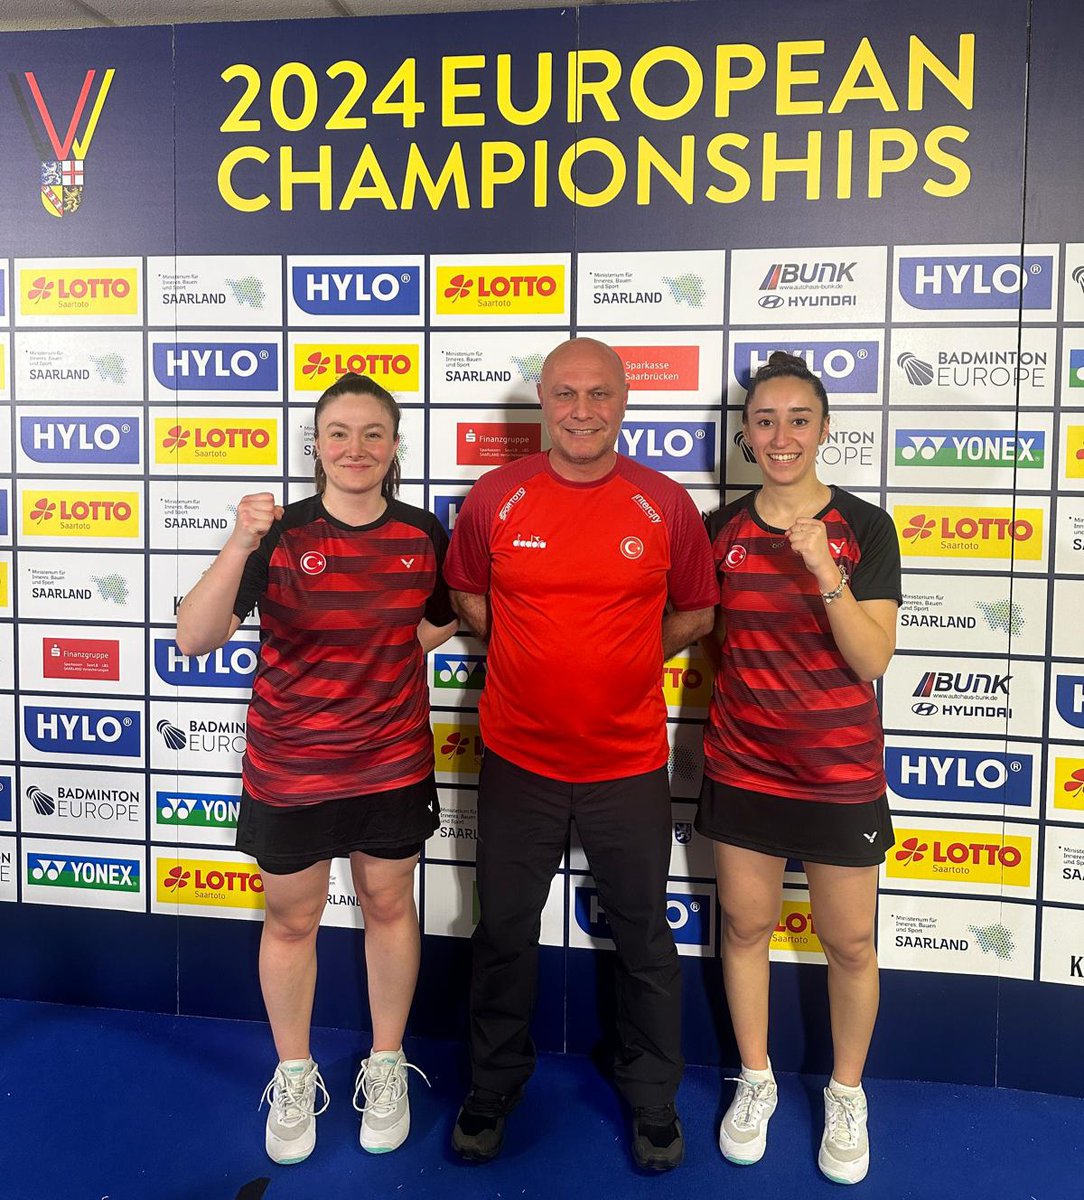 Almanya'da devam eden Büyükler Avrupa Badminton Şampiyonası Çift Kadınlar kategorisinde mücadele eden sporcularımız Bengisu ERÇETİN-Nazlıcan İNCİ Danimarkalı rakiplerini 2-1 yenerek yarı finale yükseldiler ve bu sonuçla bronz madalyayı garantilediler.